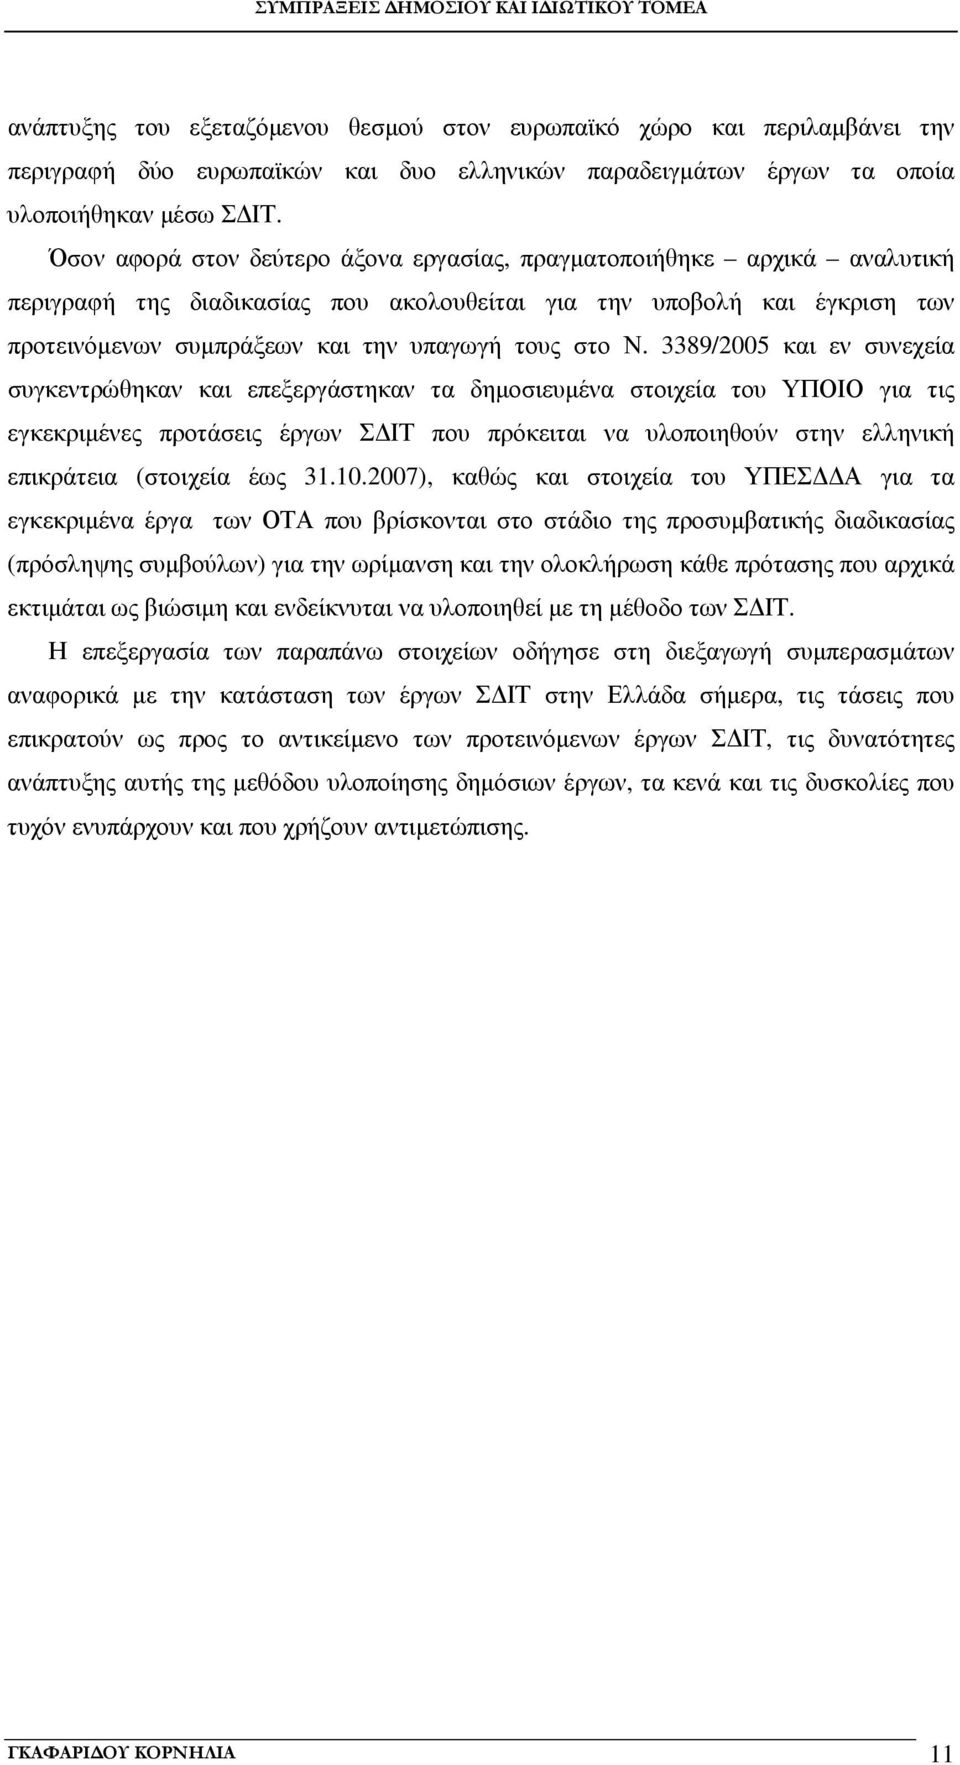 Ν. 3389/2005 και εν συνεχεία συγκεντρώθηκαν και επεξεργάστηκαν τα δηµοσιευµένα στοιχεία του ΥΠΟΙΟ για τις εγκεκριµένες προτάσεις έργων Σ ΙΤ που πρόκειται να υλοποιηθούν στην ελληνική επικράτεια